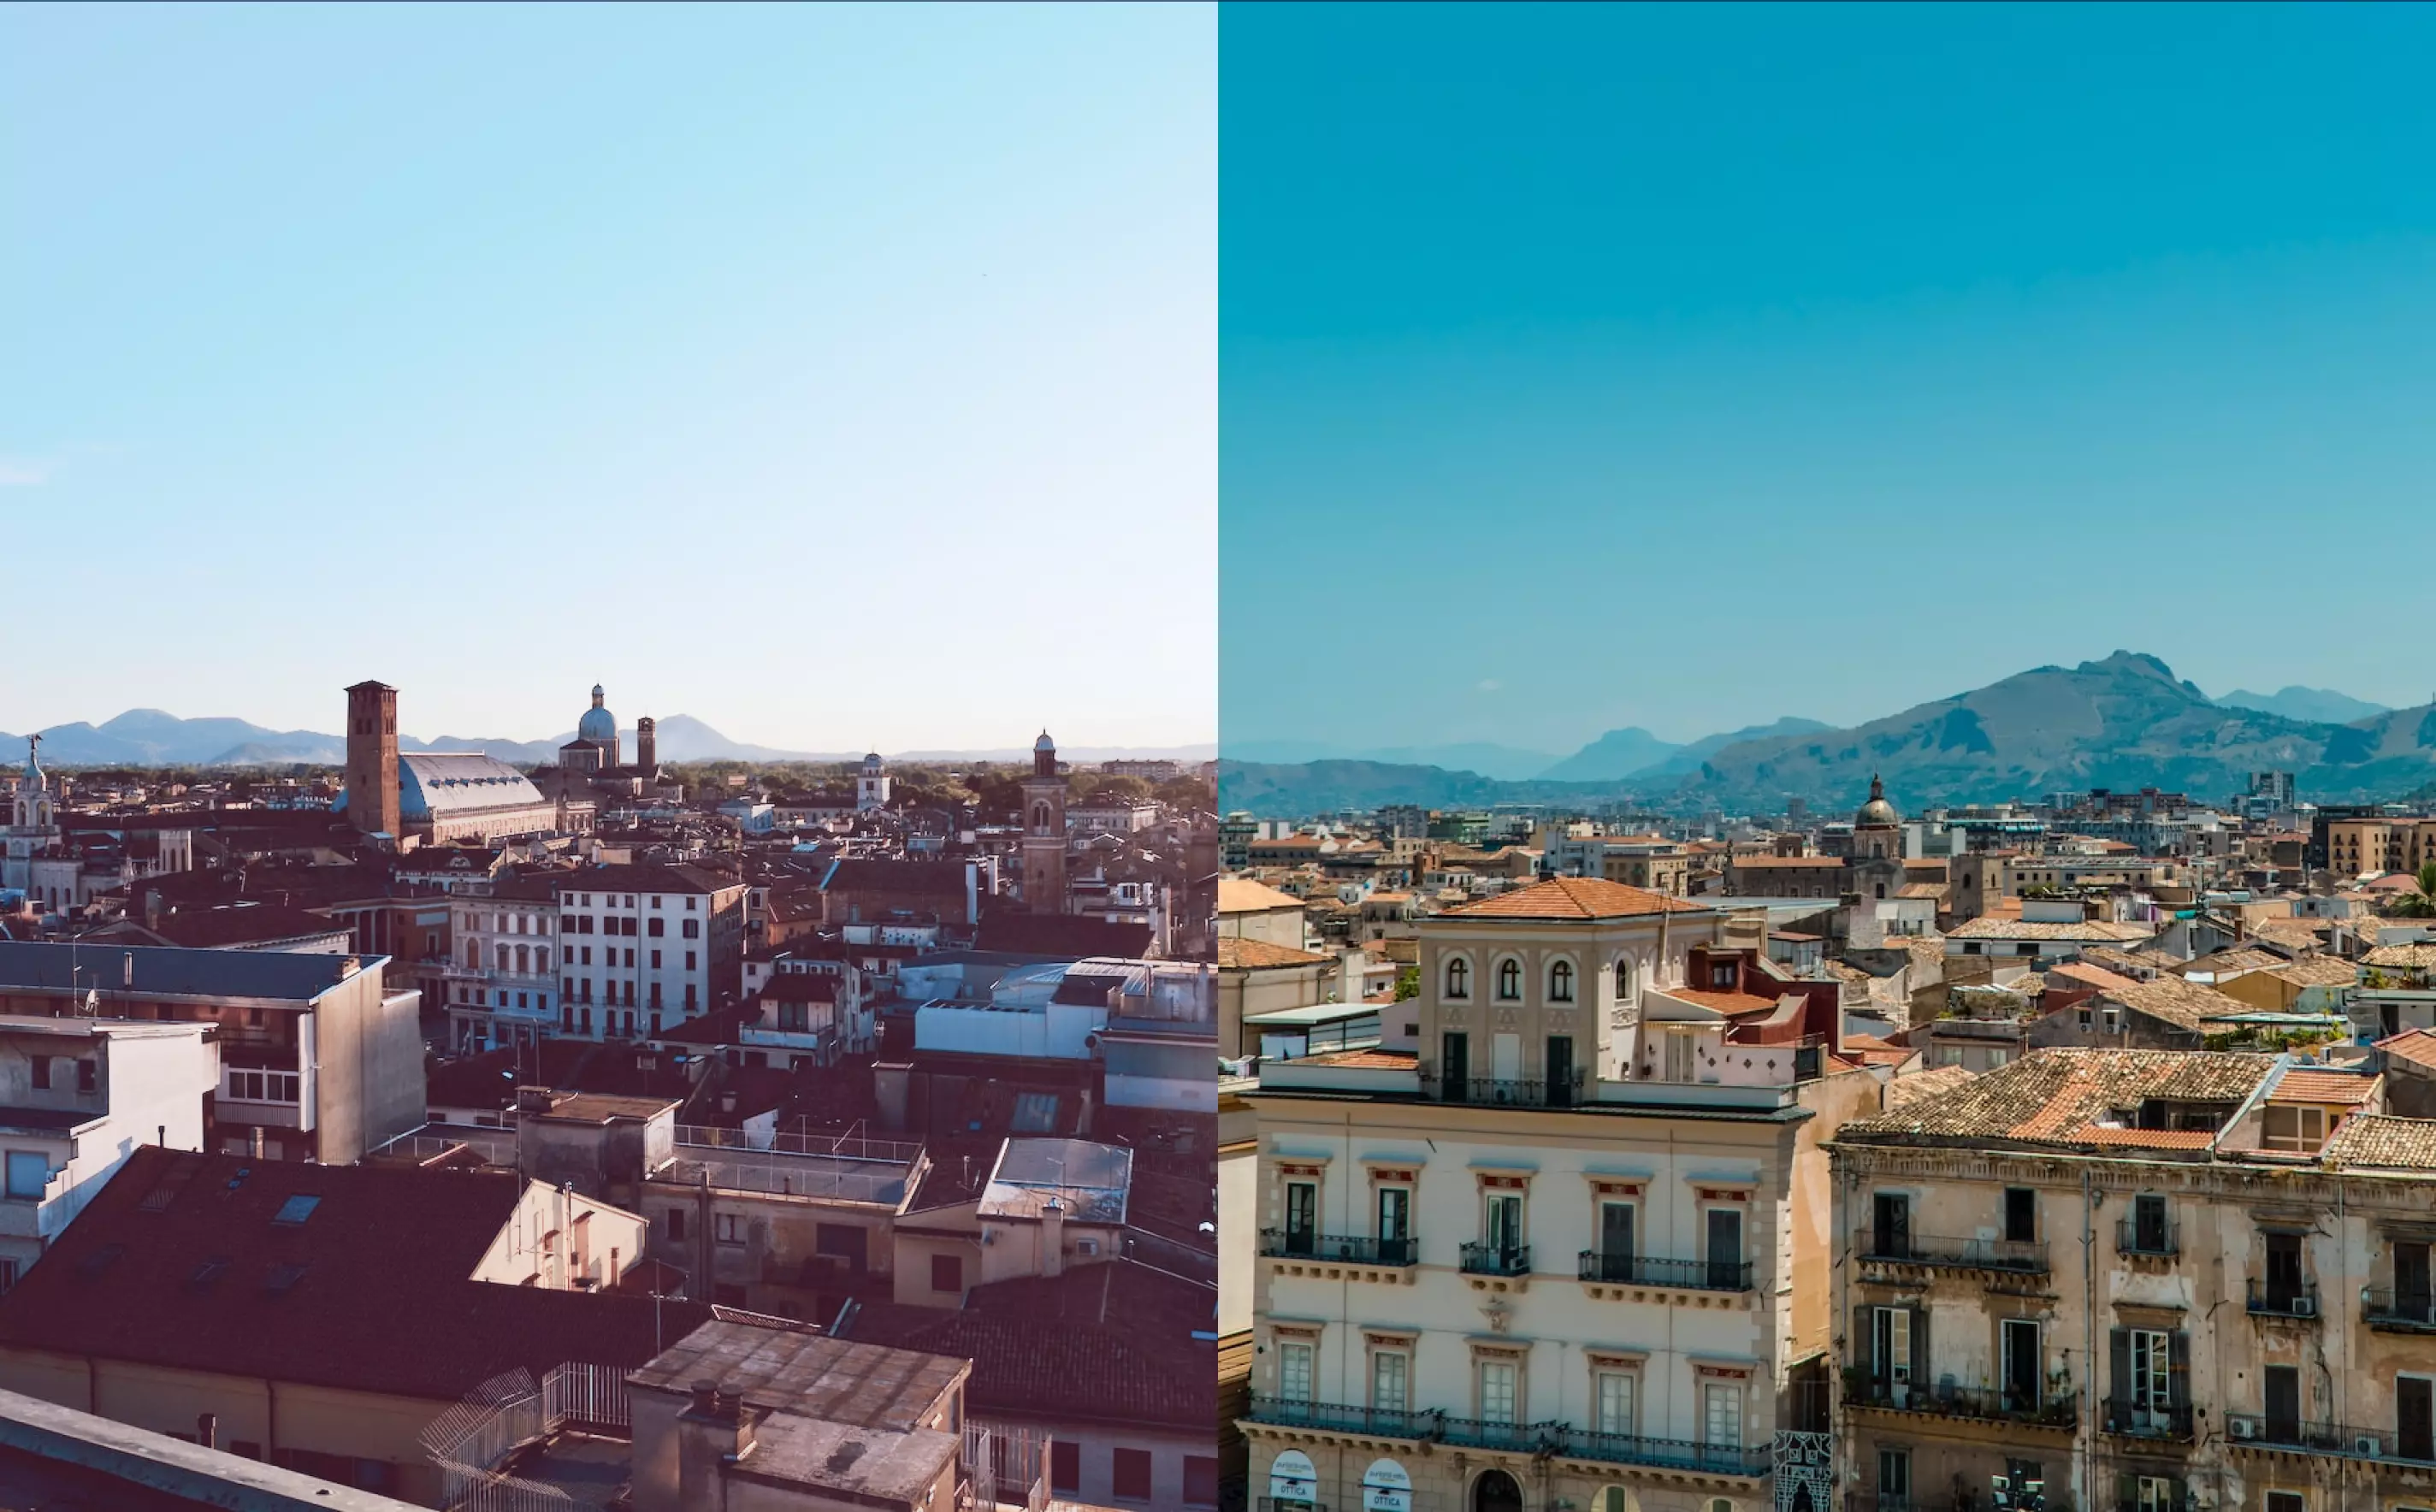 2 immagini che raffigurano la città di Palermo e di Padova